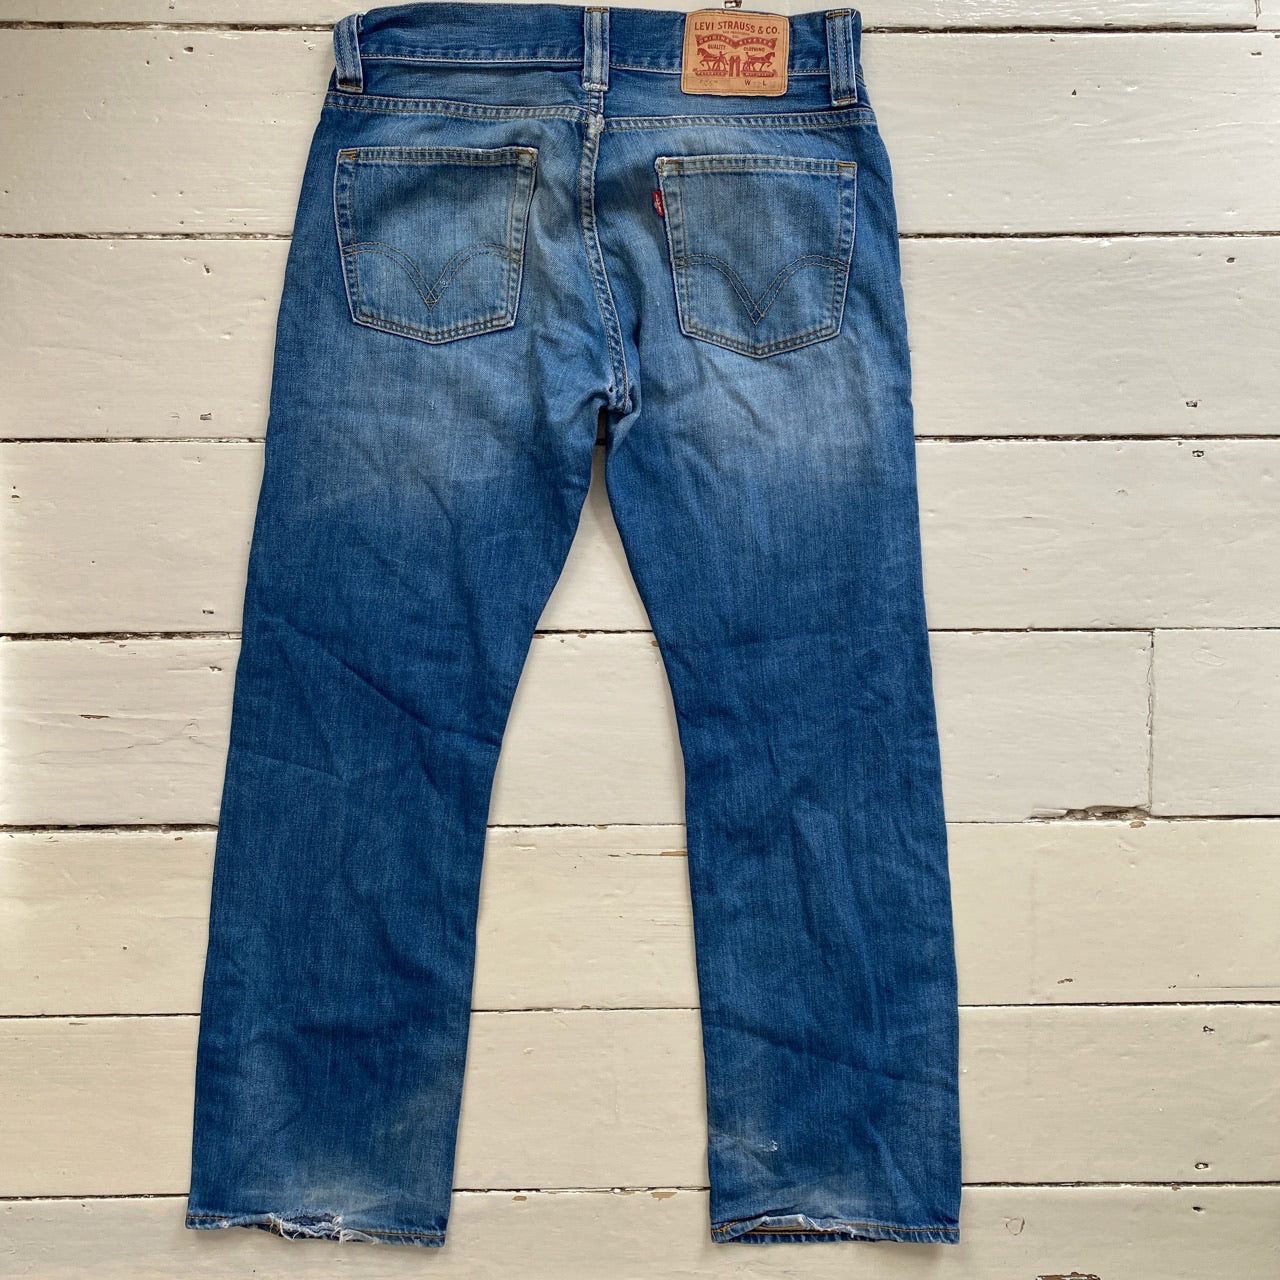 Levis 506 Light Blue Jeans (32/30)